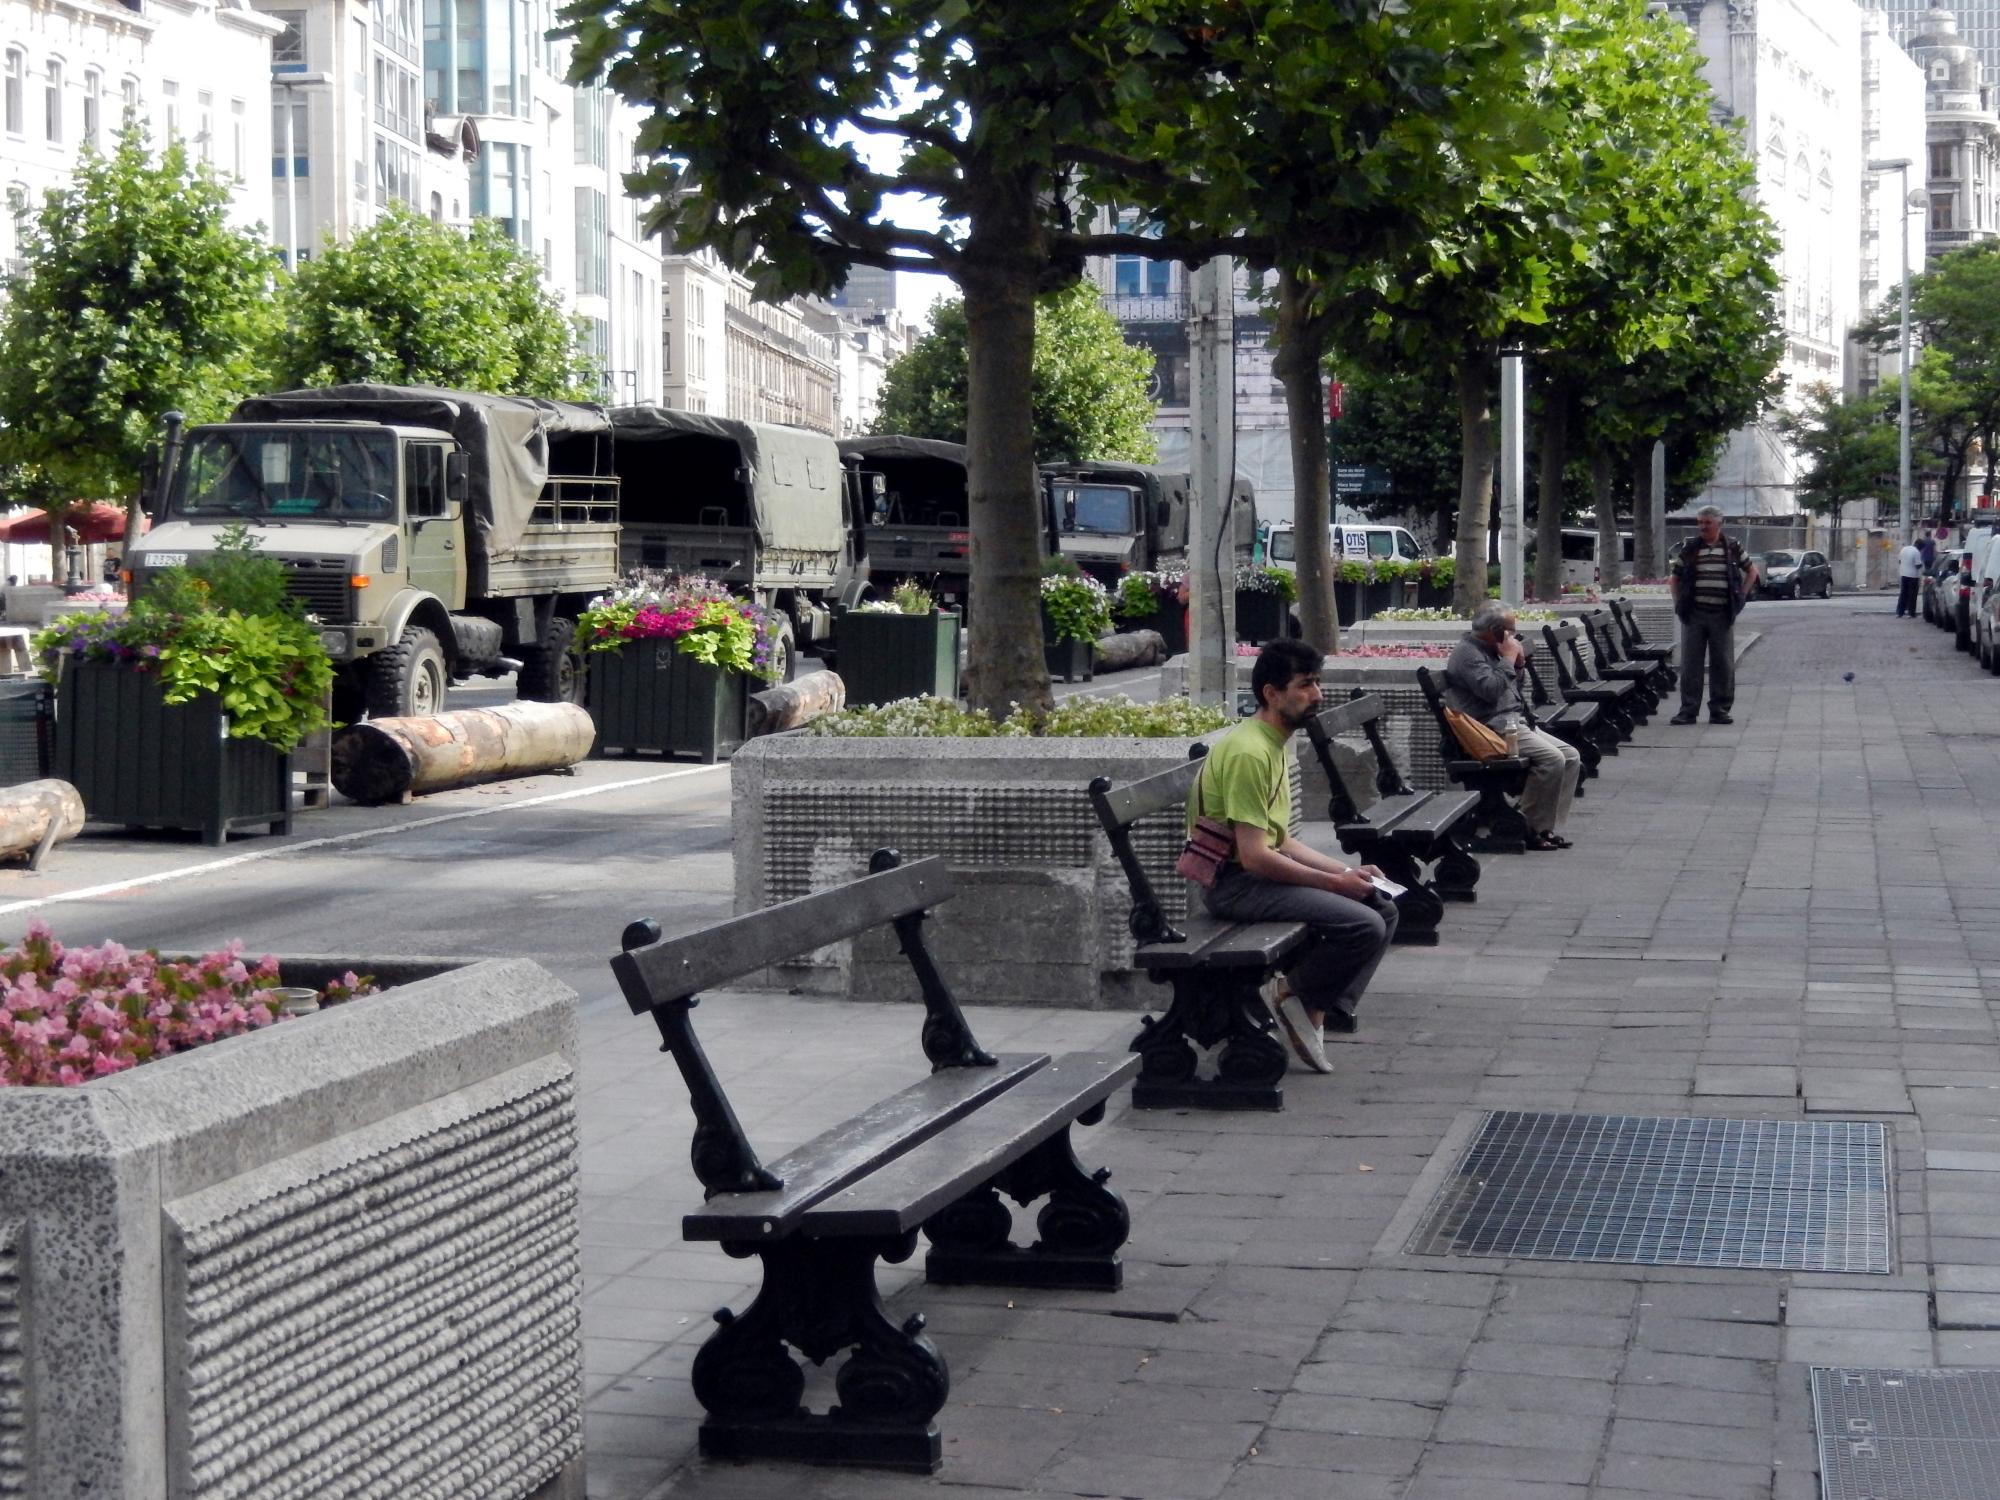 Brussels (2010-2016) - Troop Vehicles